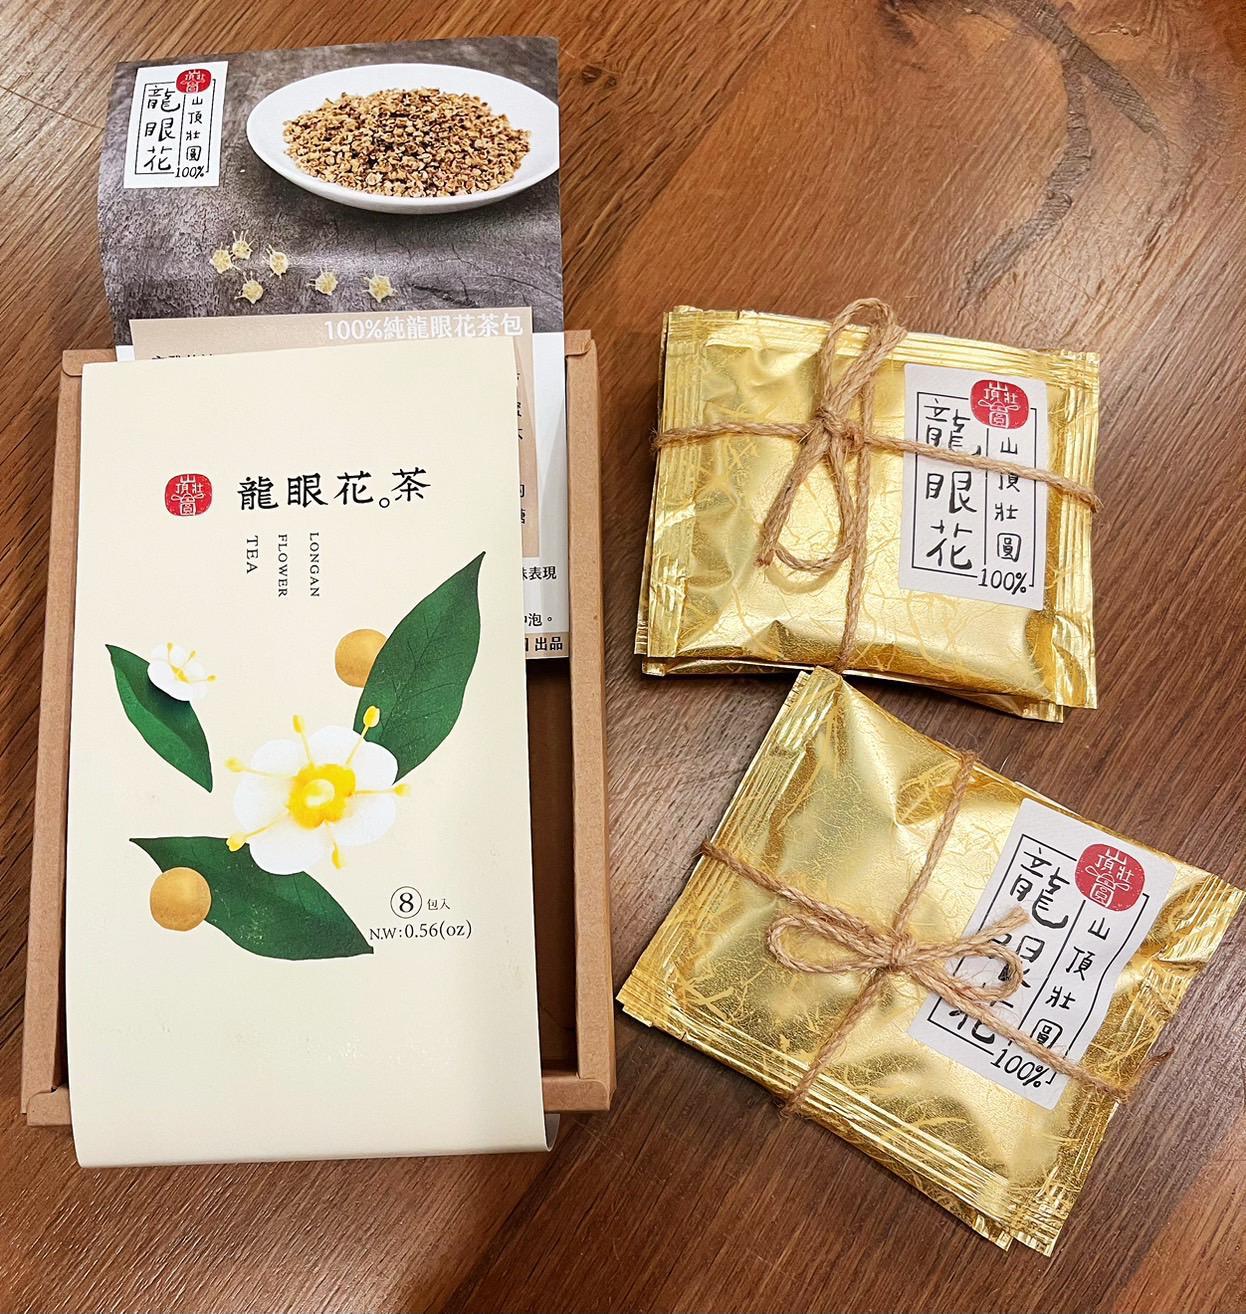 
                  
                    【山頂壯圓】龍眼花茶禮盒8入(2克/包)
                  
                